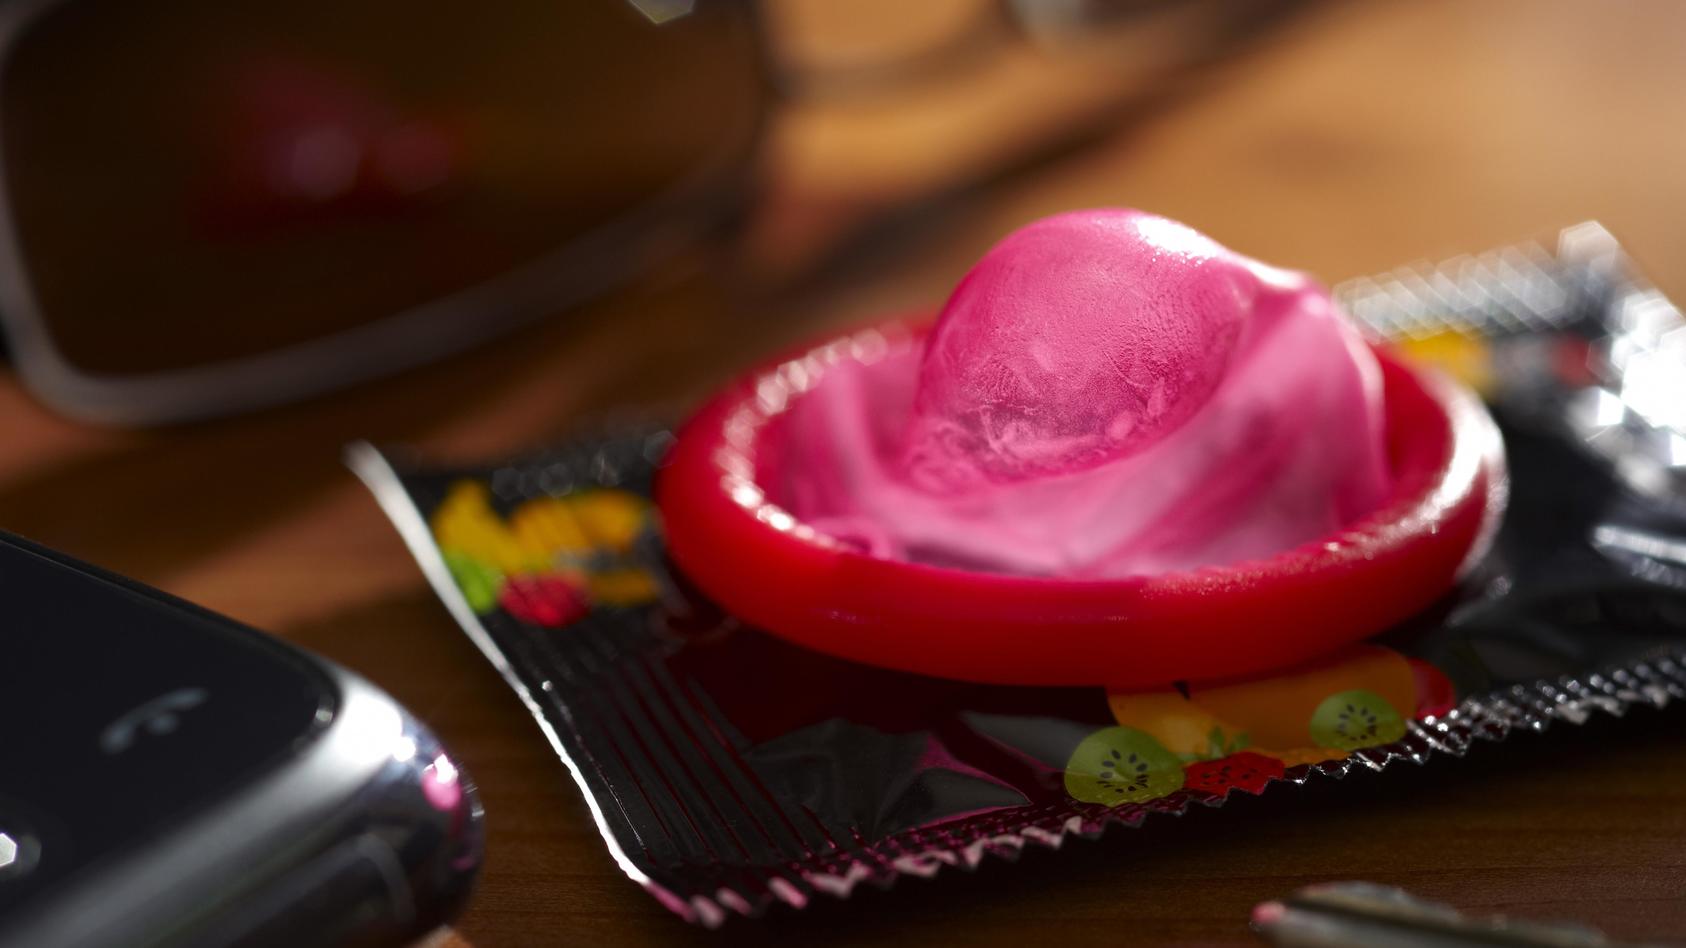 Ein Kondom liegt auf einem Tisch neben einem Handy, einem Autoschlüssel und einer Sonnenbrille, Symbolbild Untreue | Verwendung weltweit, Keine Weitergabe an Wiederverkäufer.